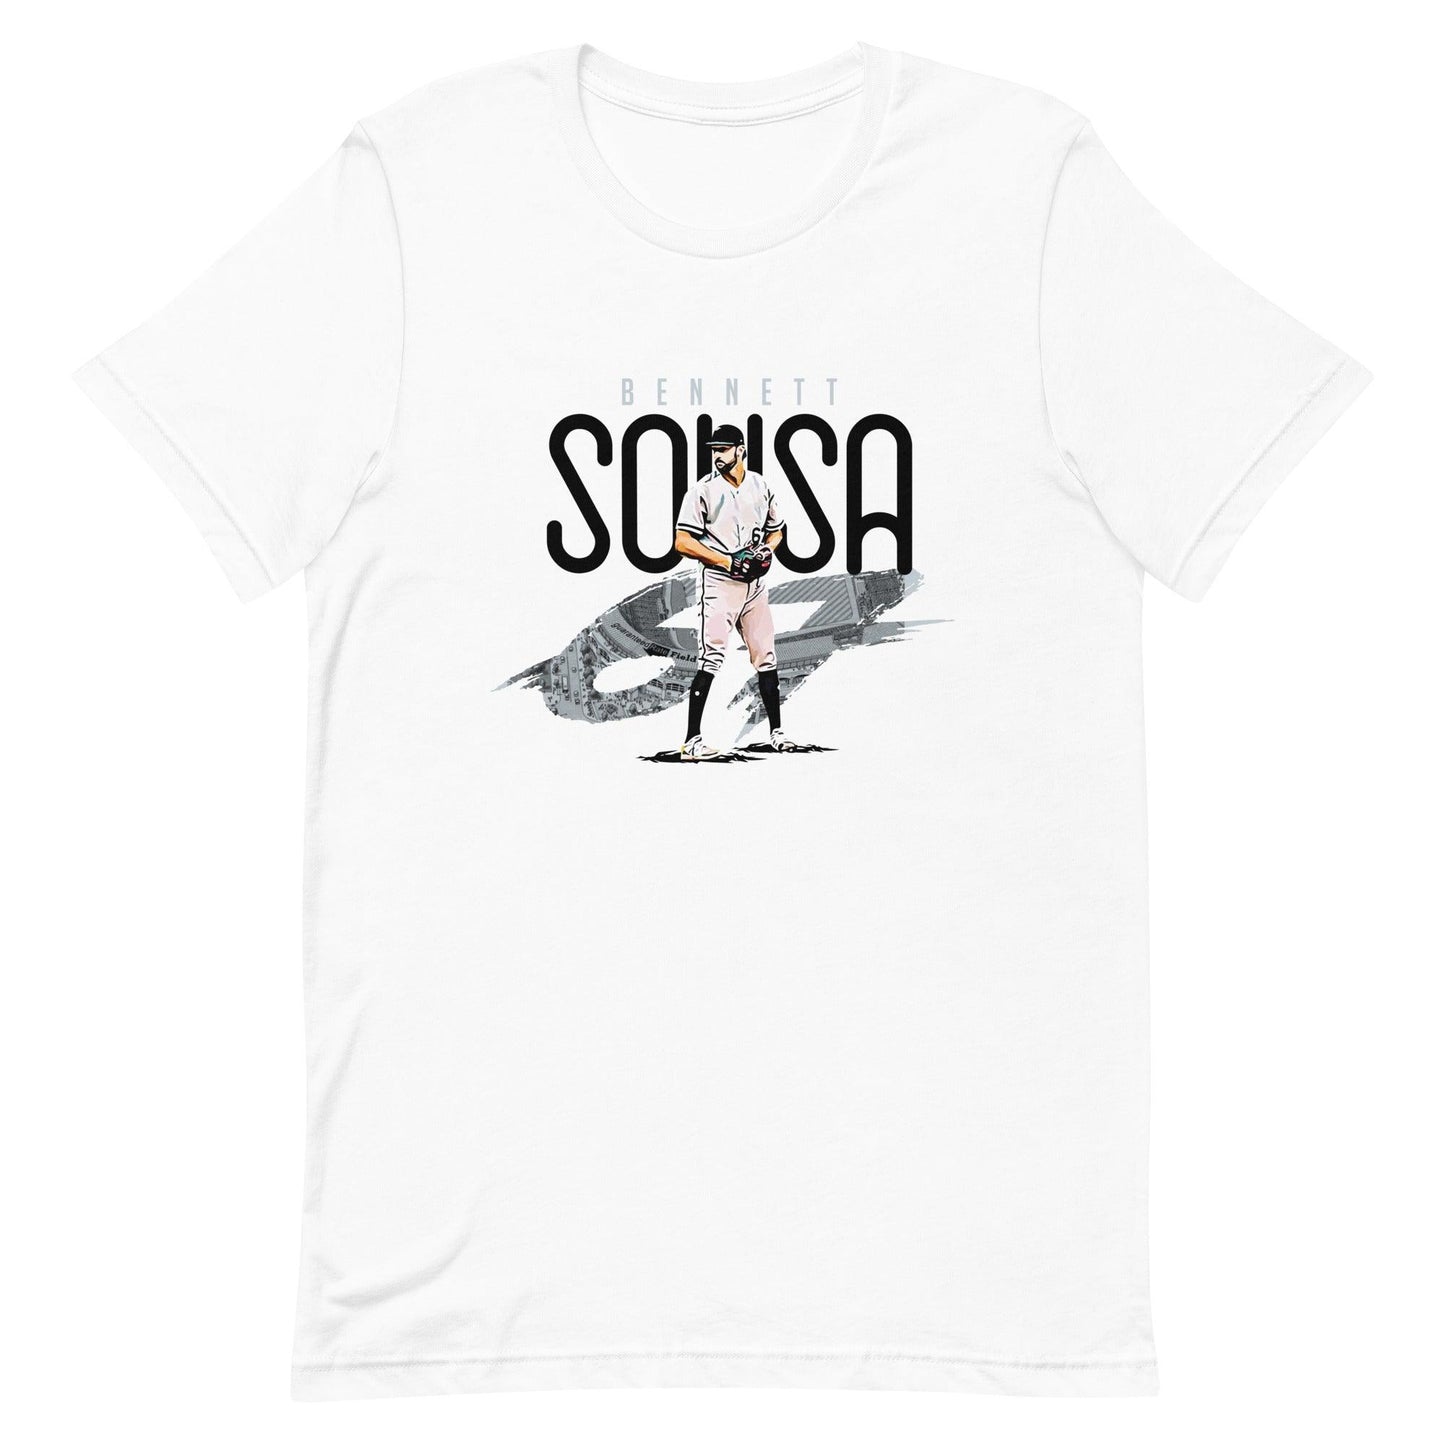 Bennett Sousa “Essential” t-shirt - Fan Arch